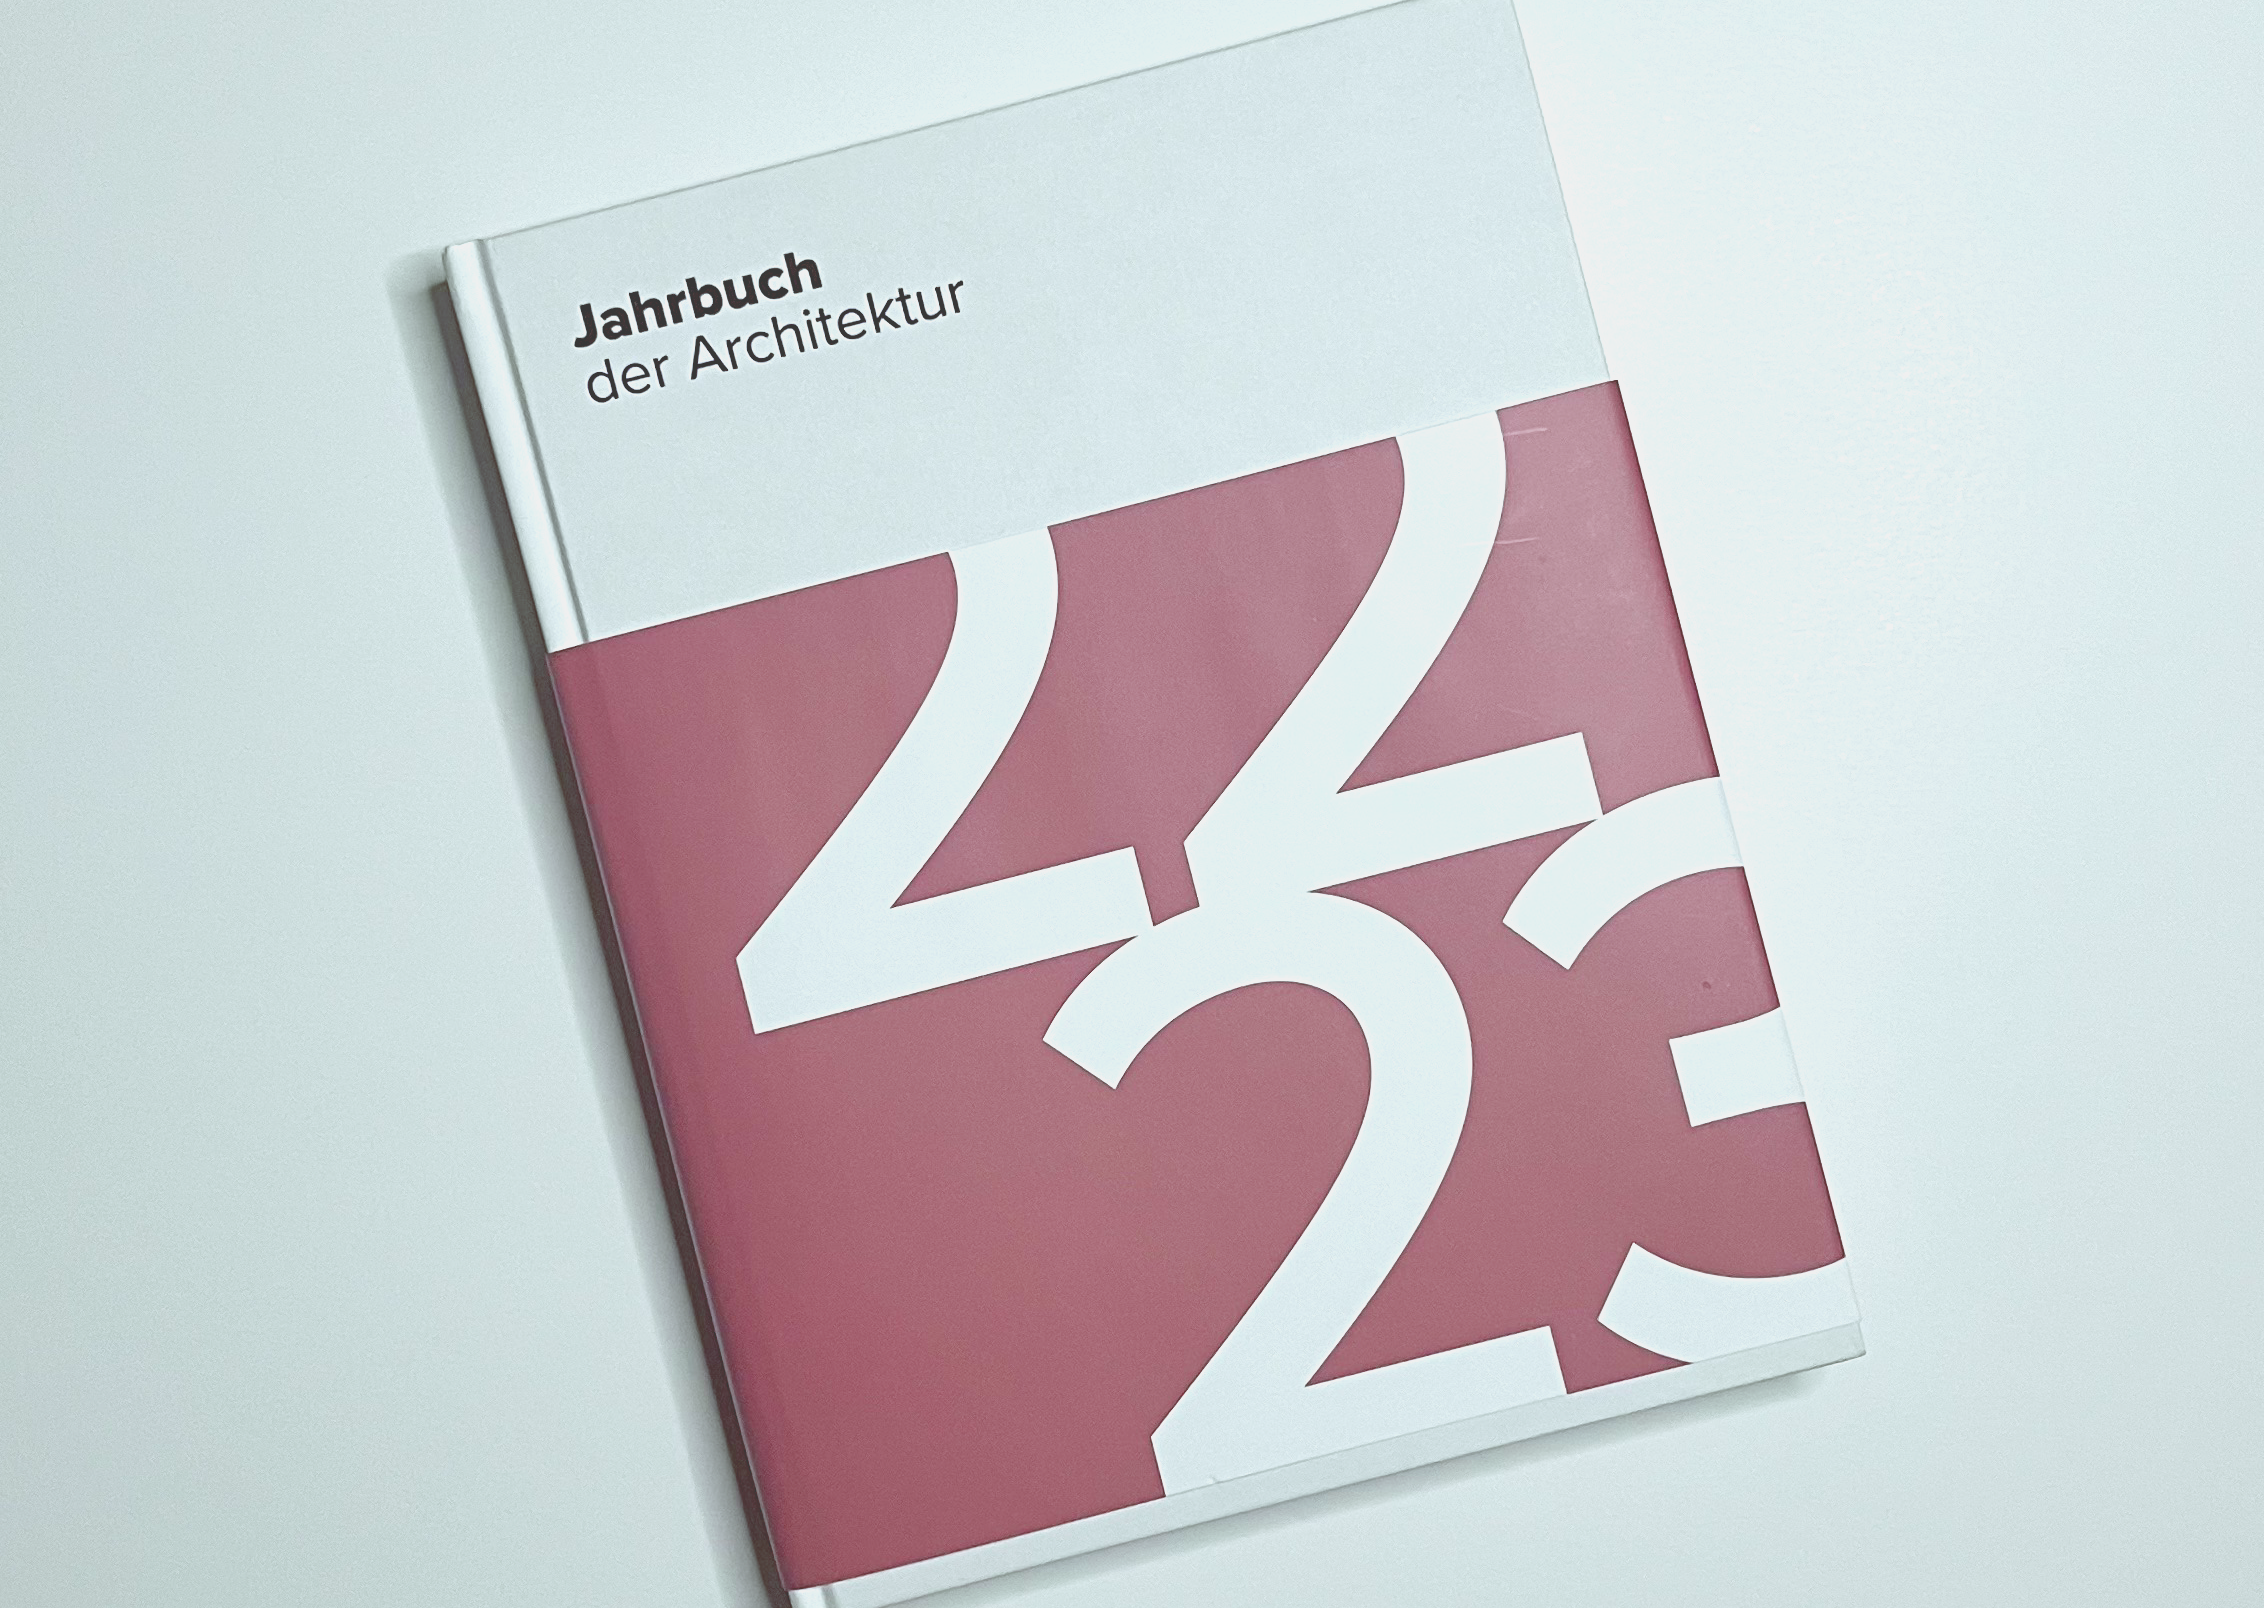 publication: le centre nautique dans "Jahrbuch der Architektur"